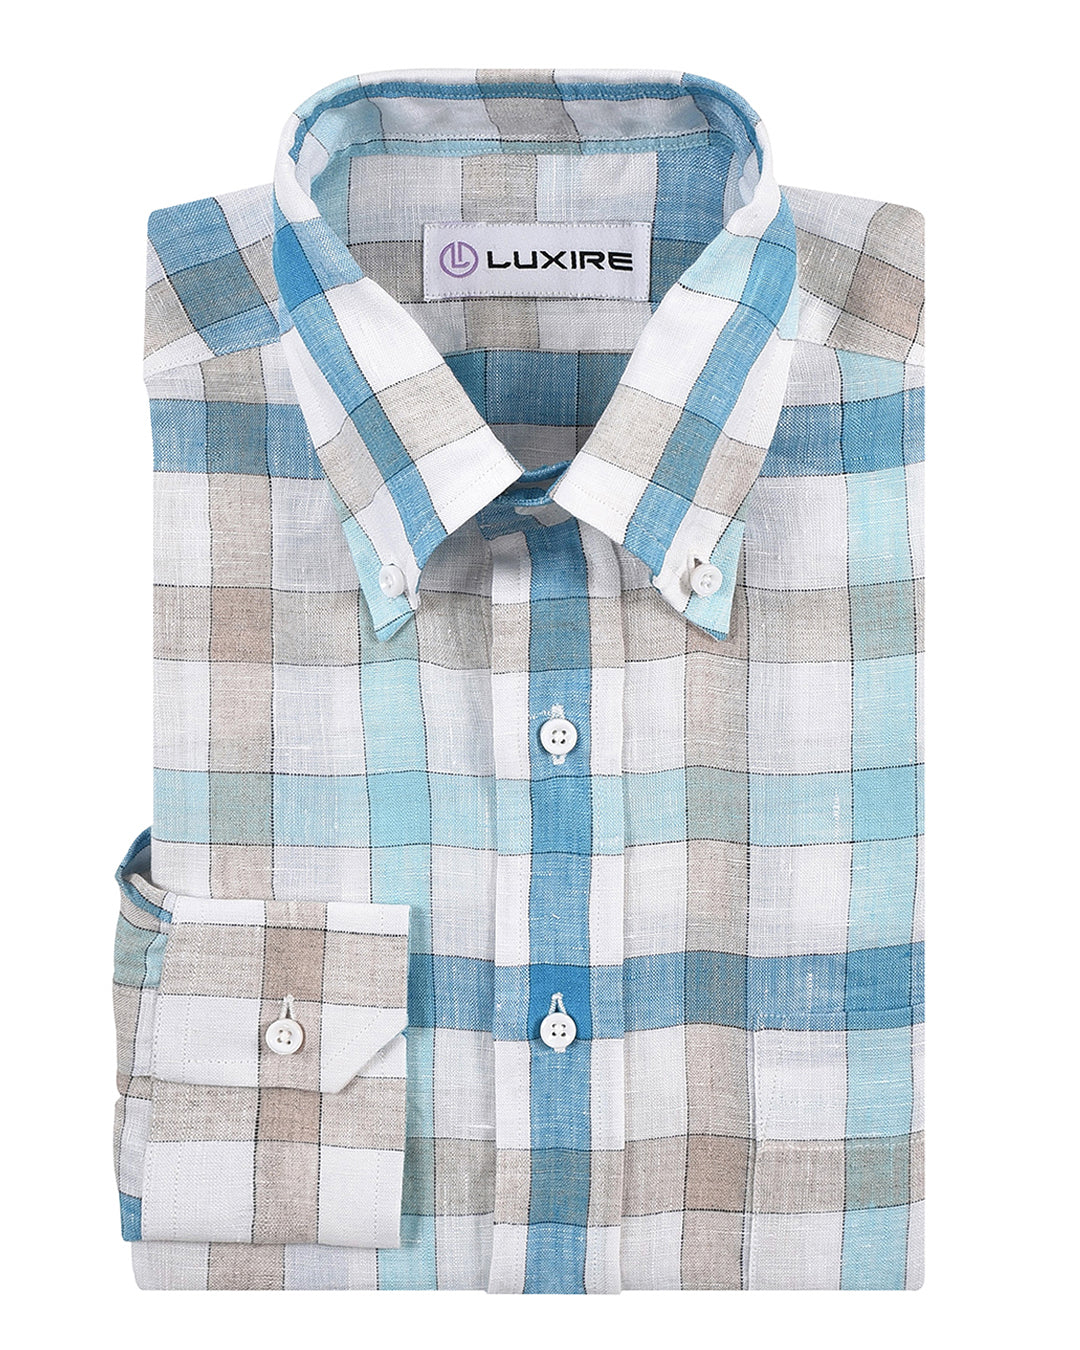 Front view of custom linen shirt for men in white blue ecru checks